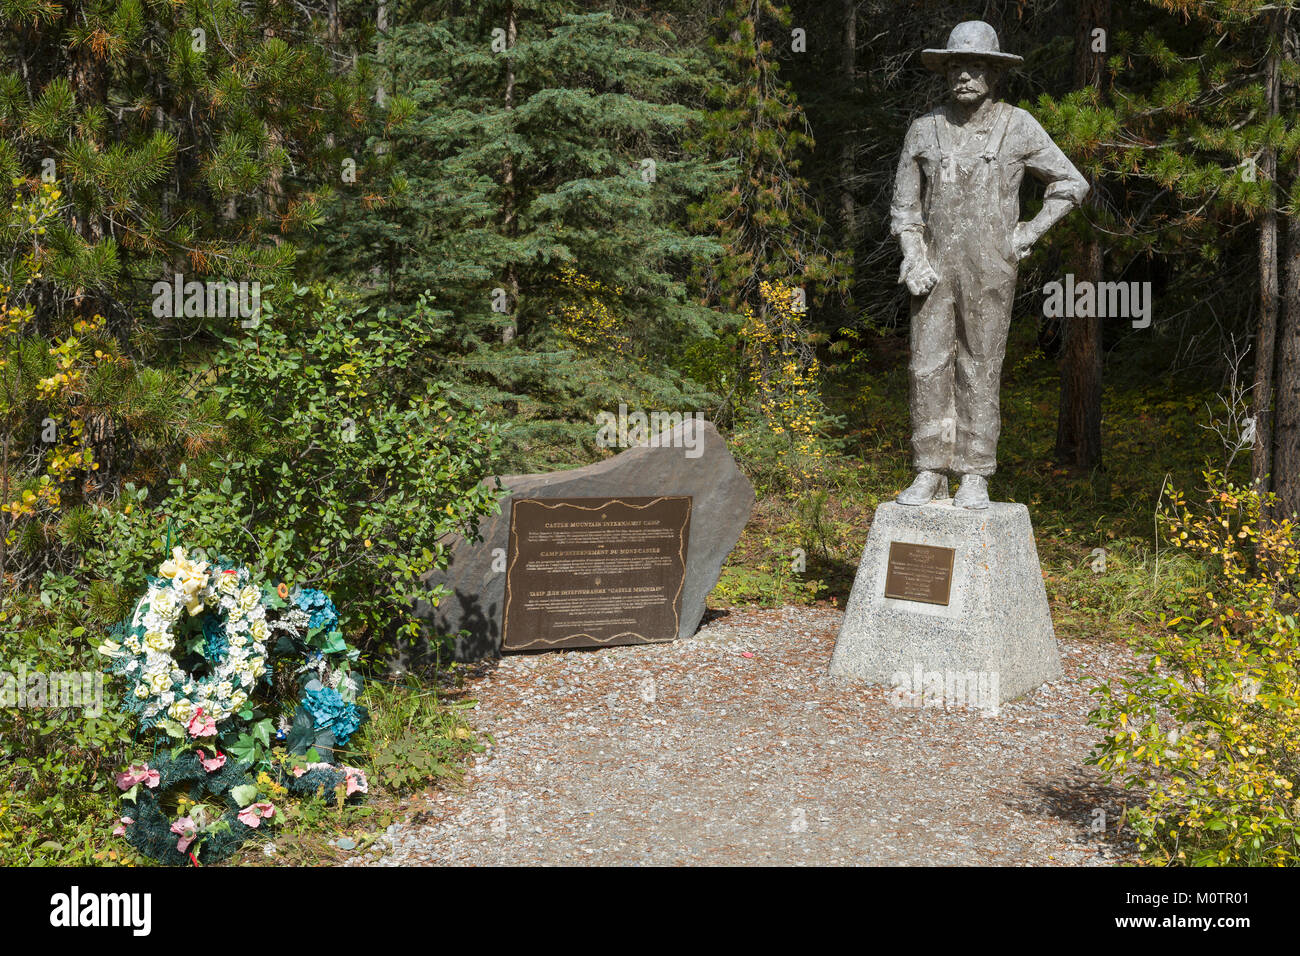 Monumento al campamento de internamiento de los inmigrantes ucranianos en Canadá cerca de Castle Mountain, Banff, AB Foto de stock